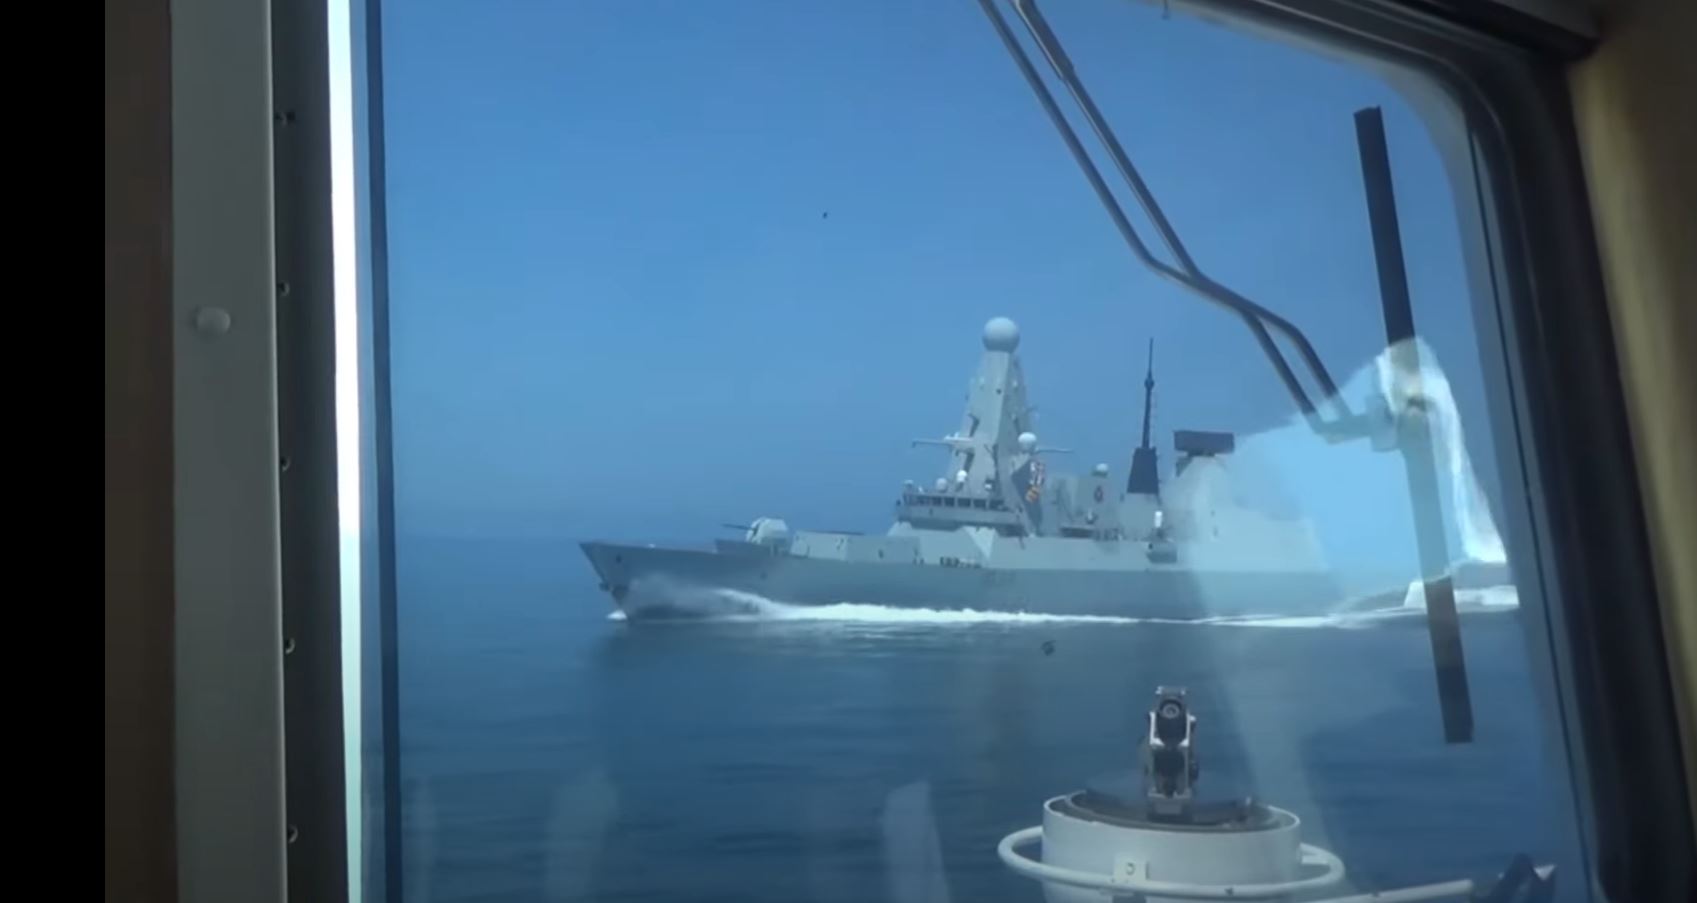 Incident naval en Mer Noire : voir au-delà de l’évènement